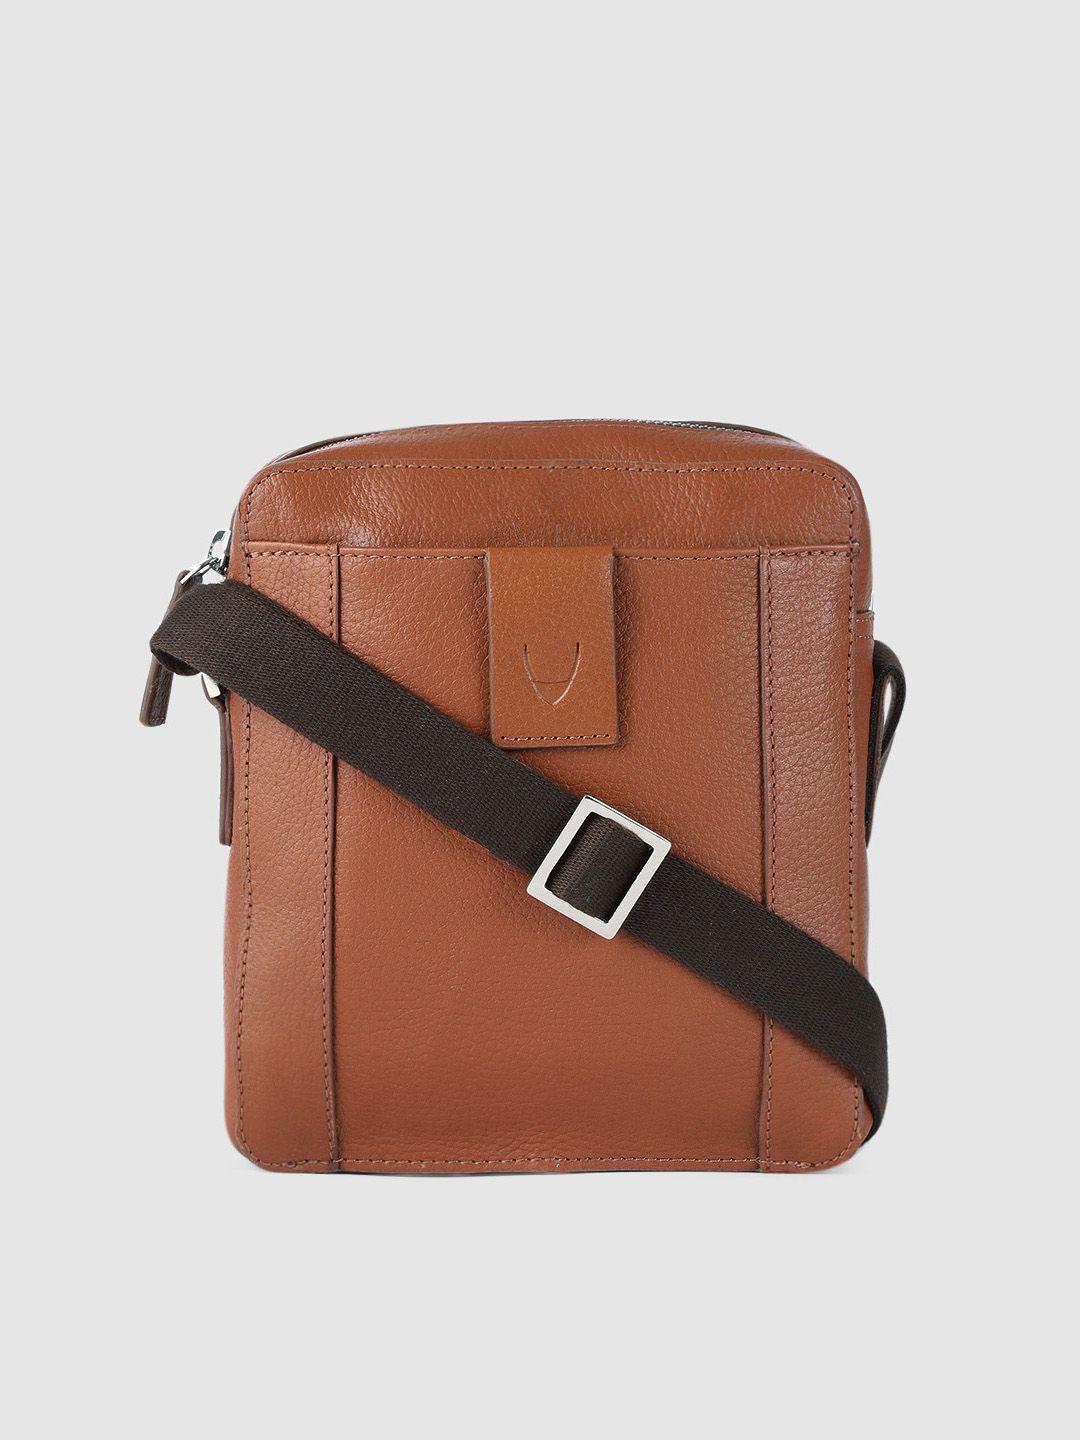 hidesign-men-brown-solid-leather-messenger-bag